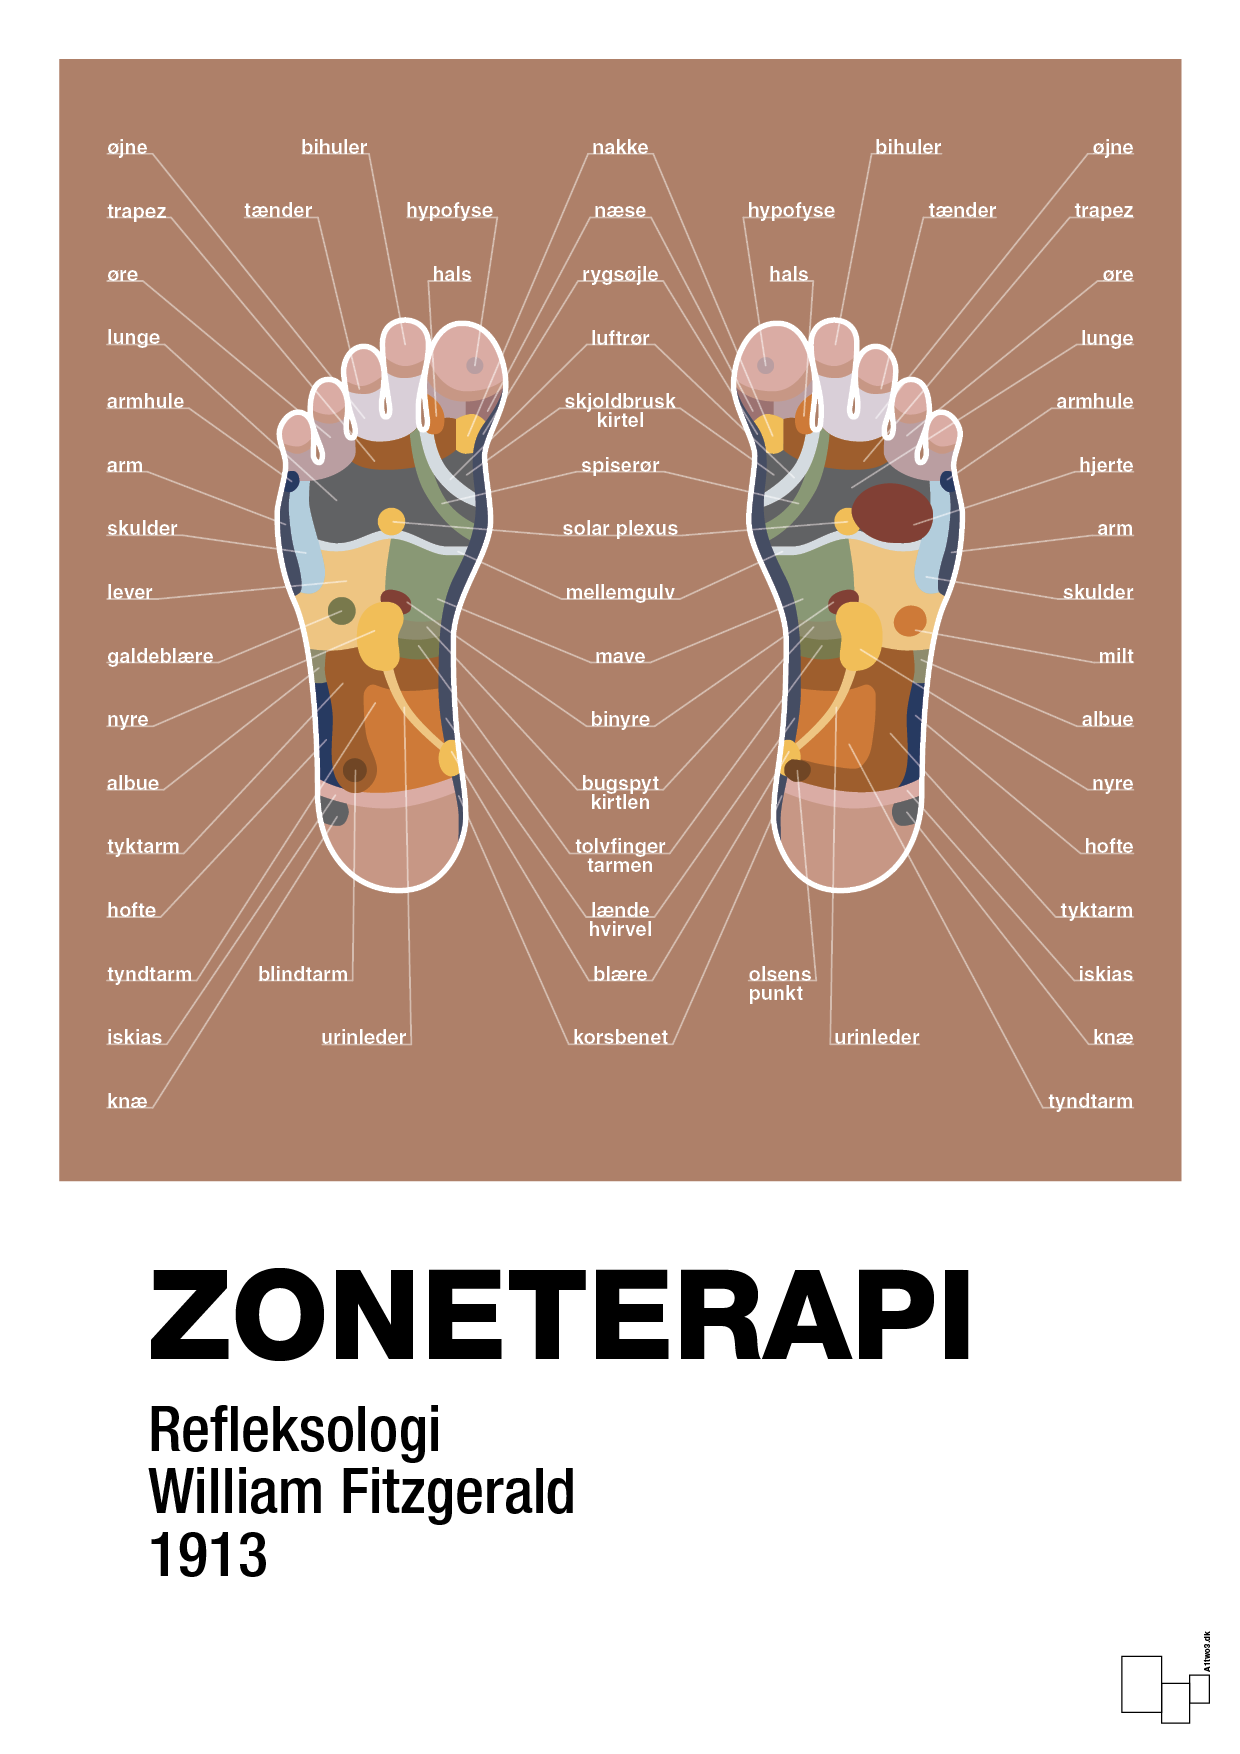 zoneterapi - Plakat med Videnskab i Cider Spice